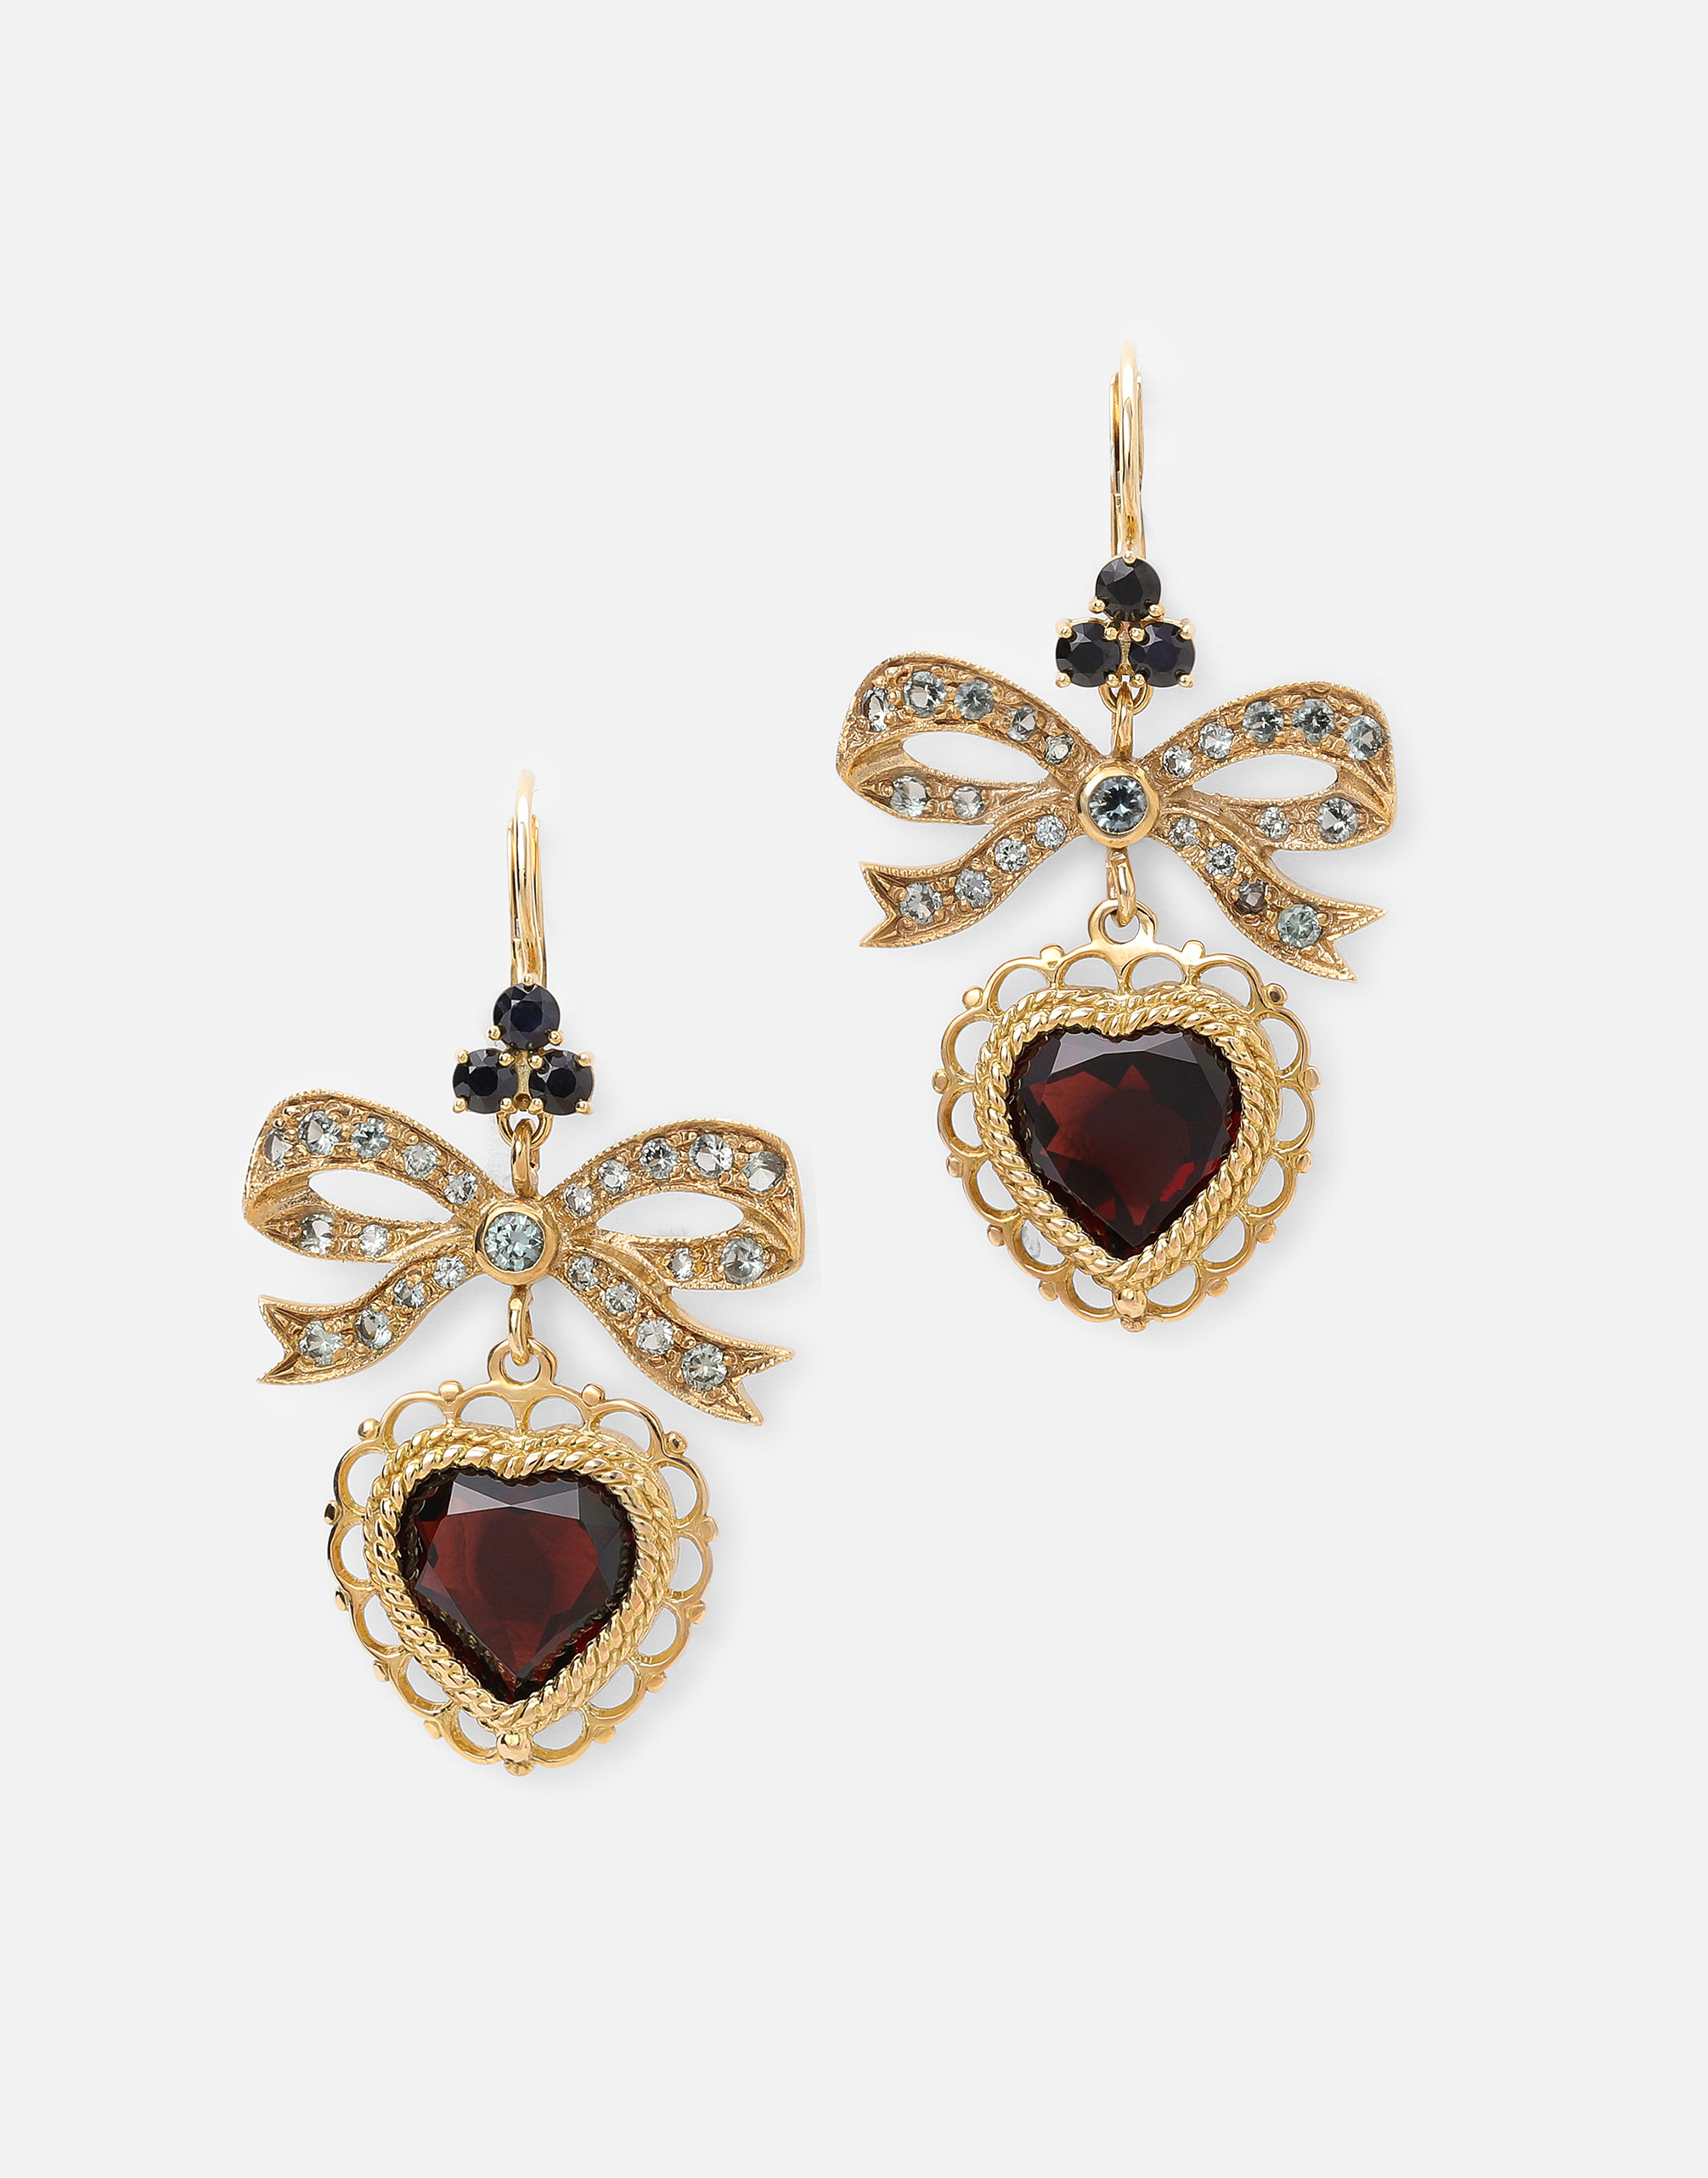 Heart leverback earrings in yellow 18kt gold with rhodolite garnet heart in Gold